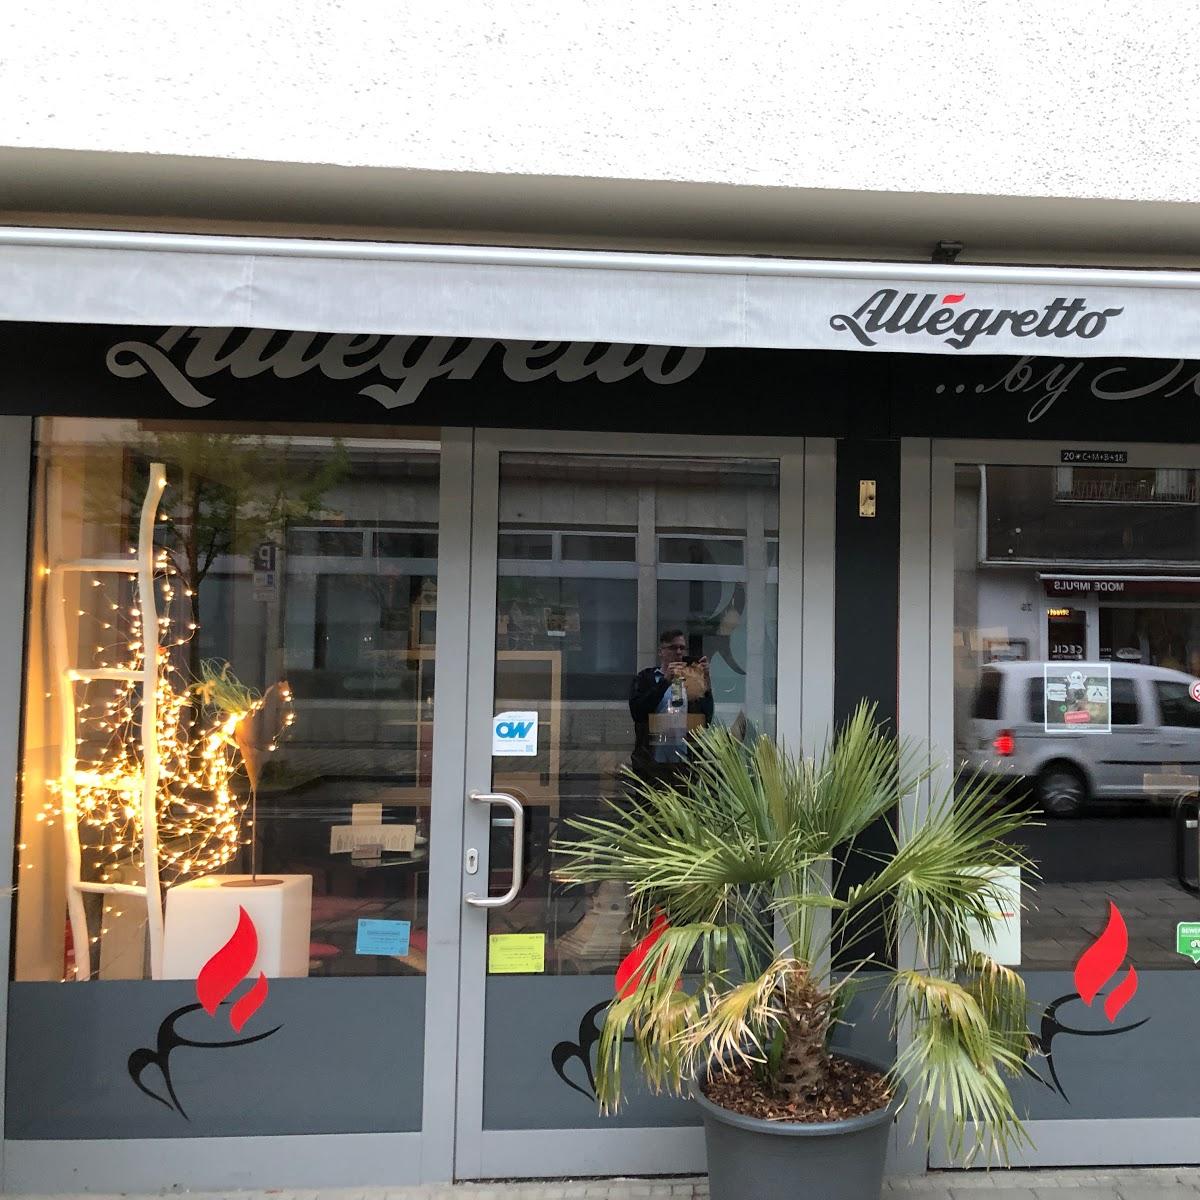 Restaurant "Cafe Allegretto" in Dortmund